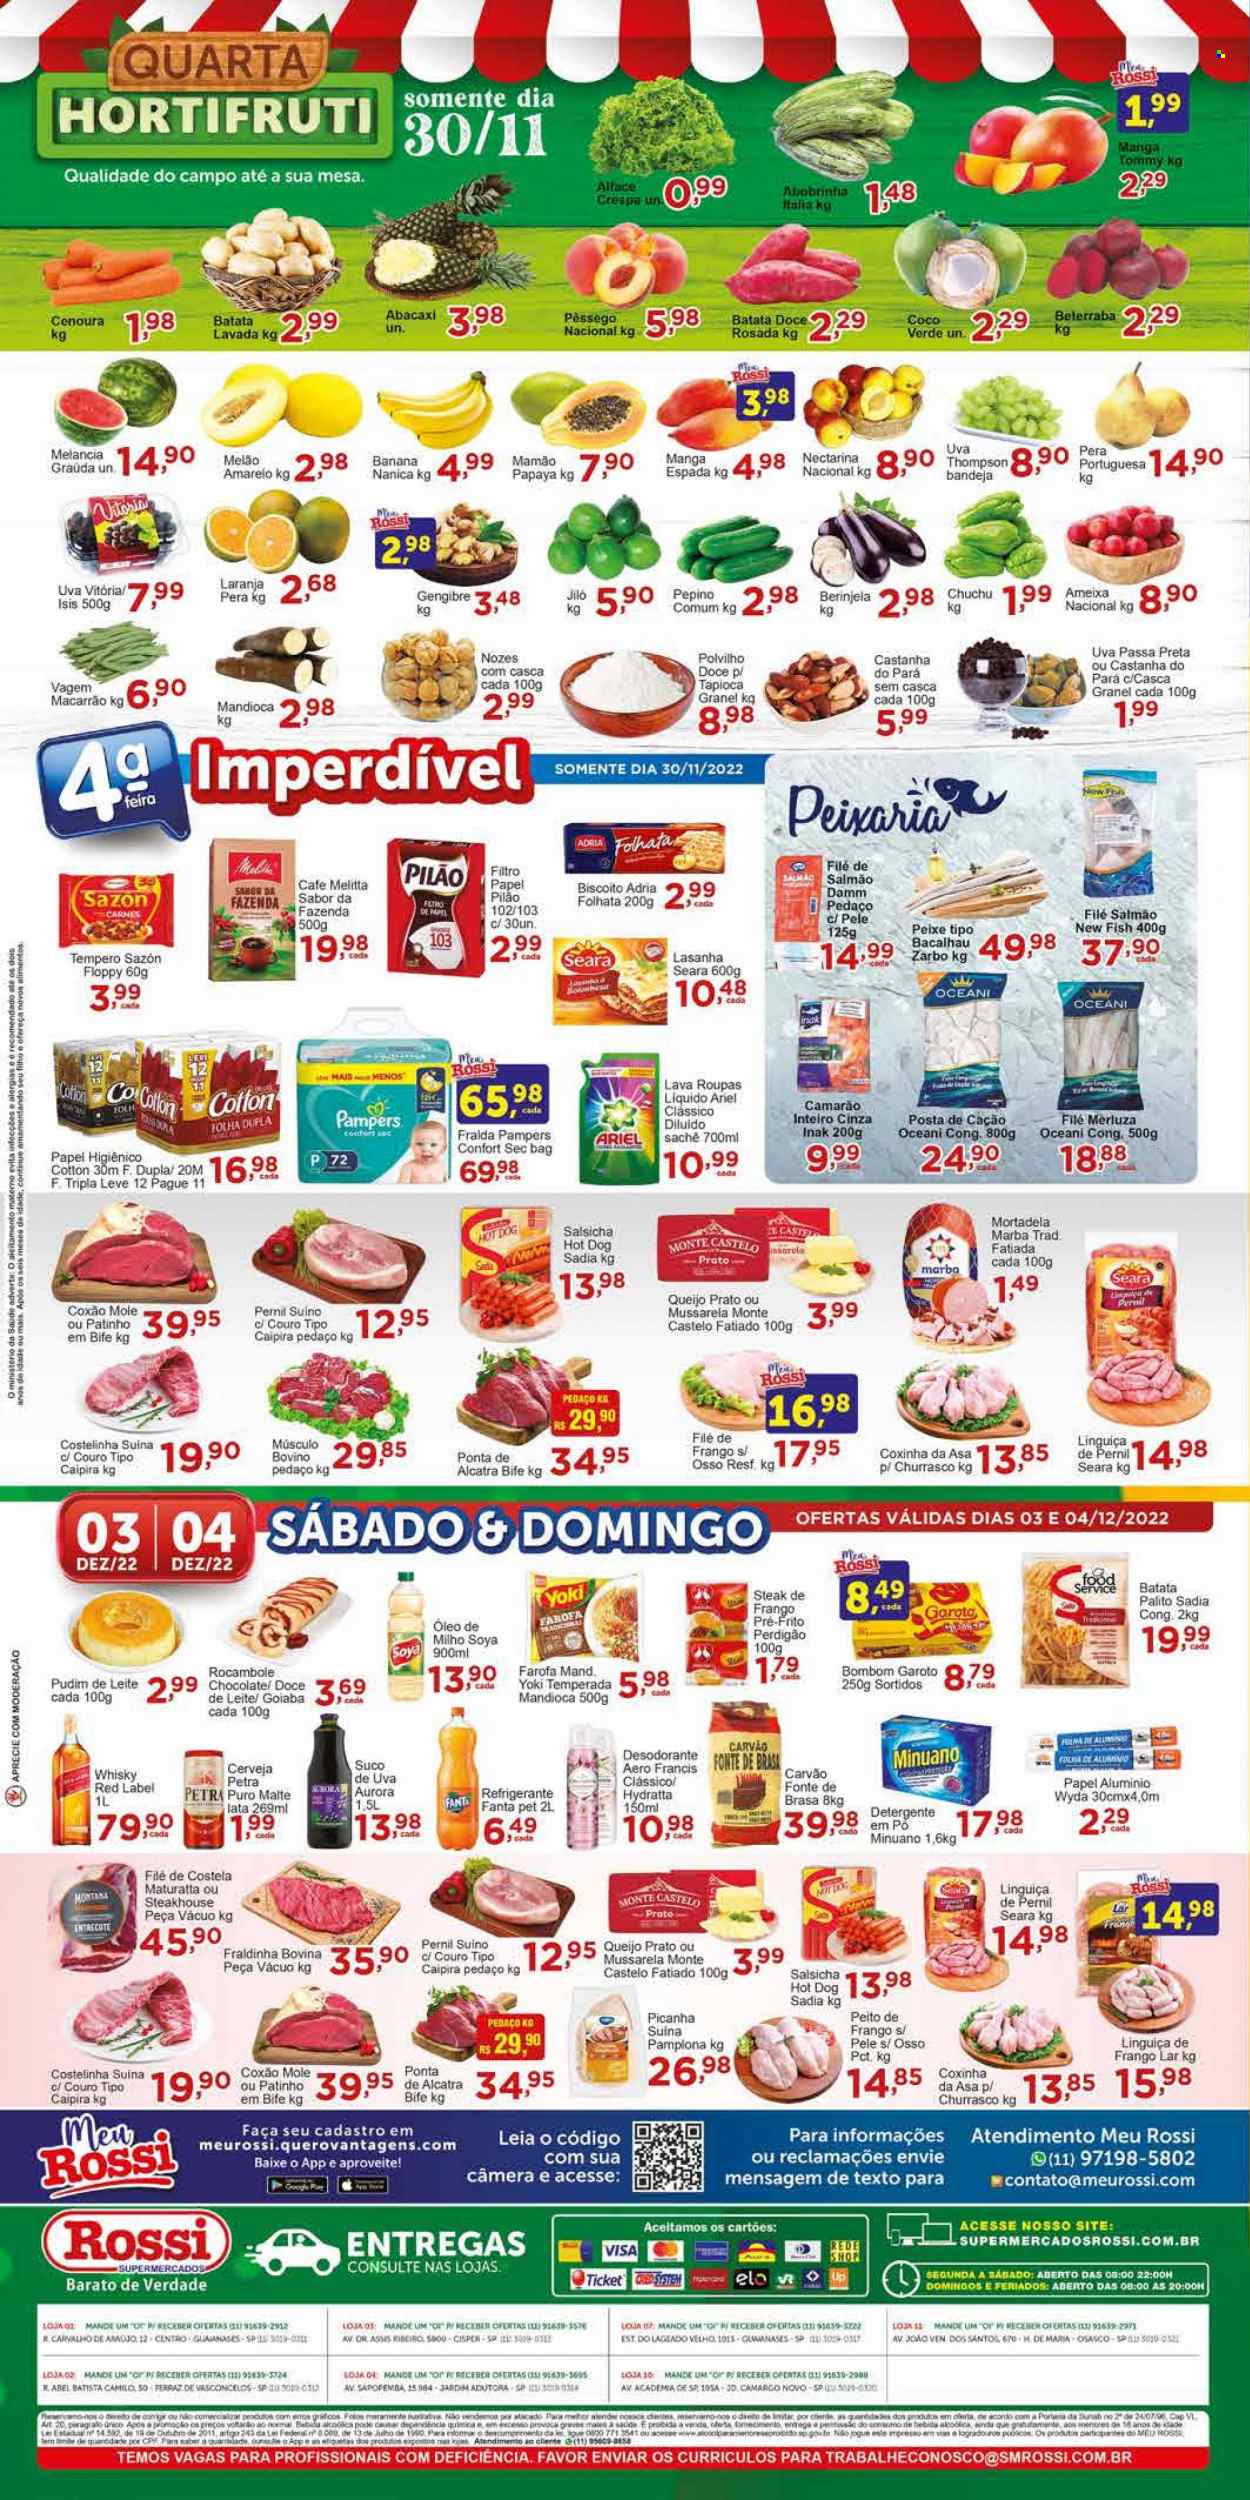 Encarte Rossi Supermercados  - 30.11.2022 - 06.12.2022.